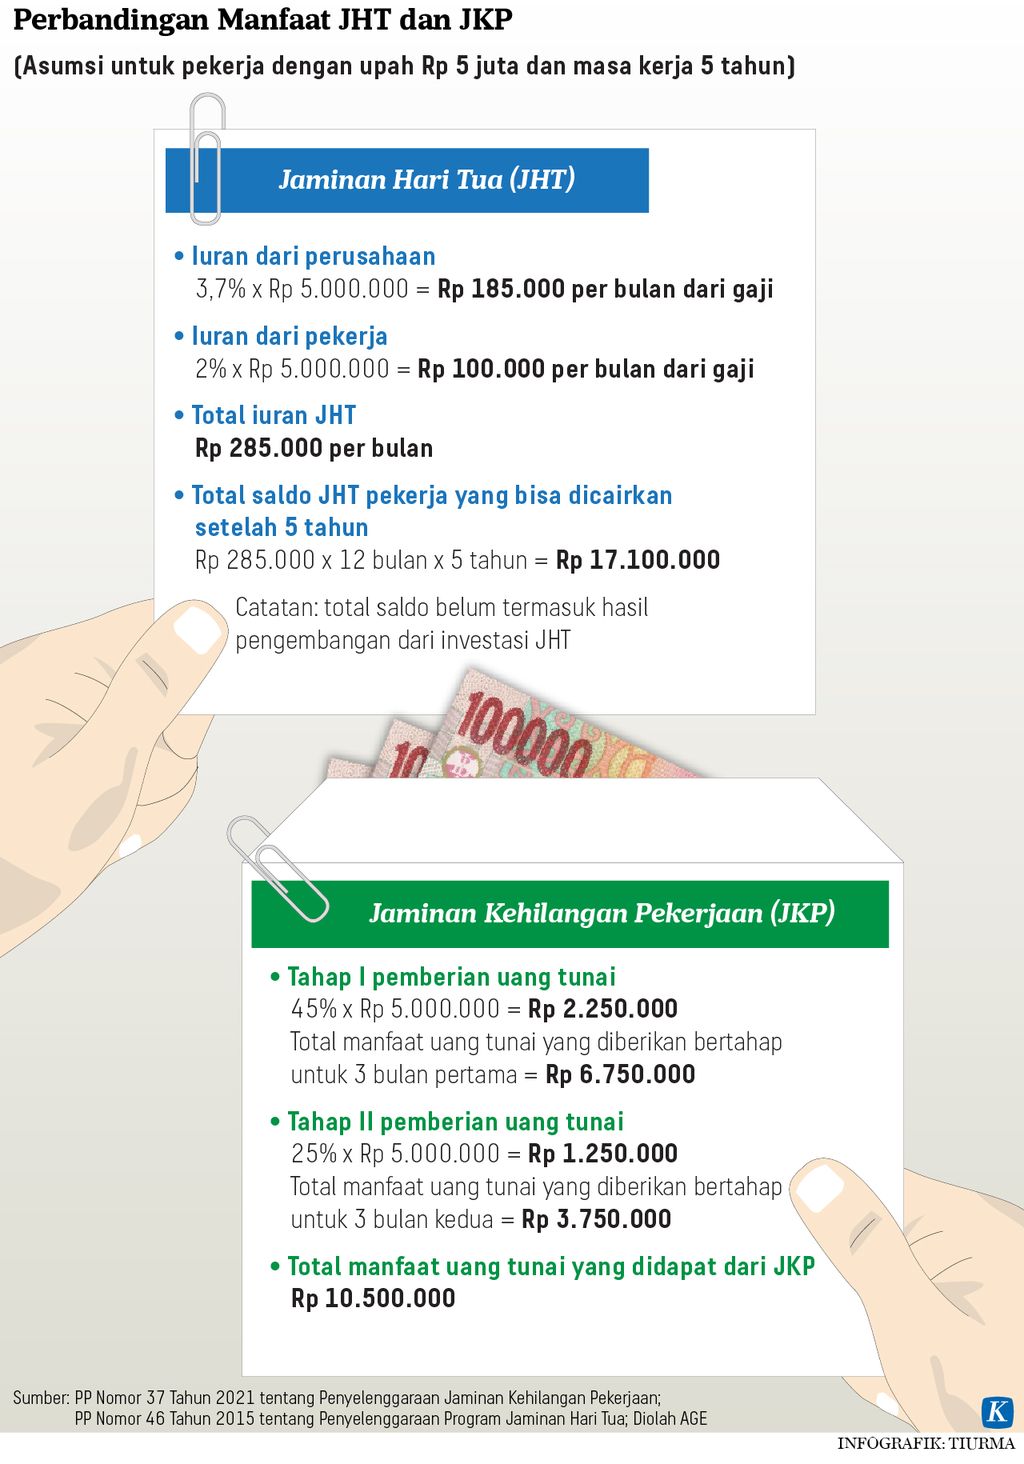 Infografik Perbandingan Manfaat JHT dan JKP.